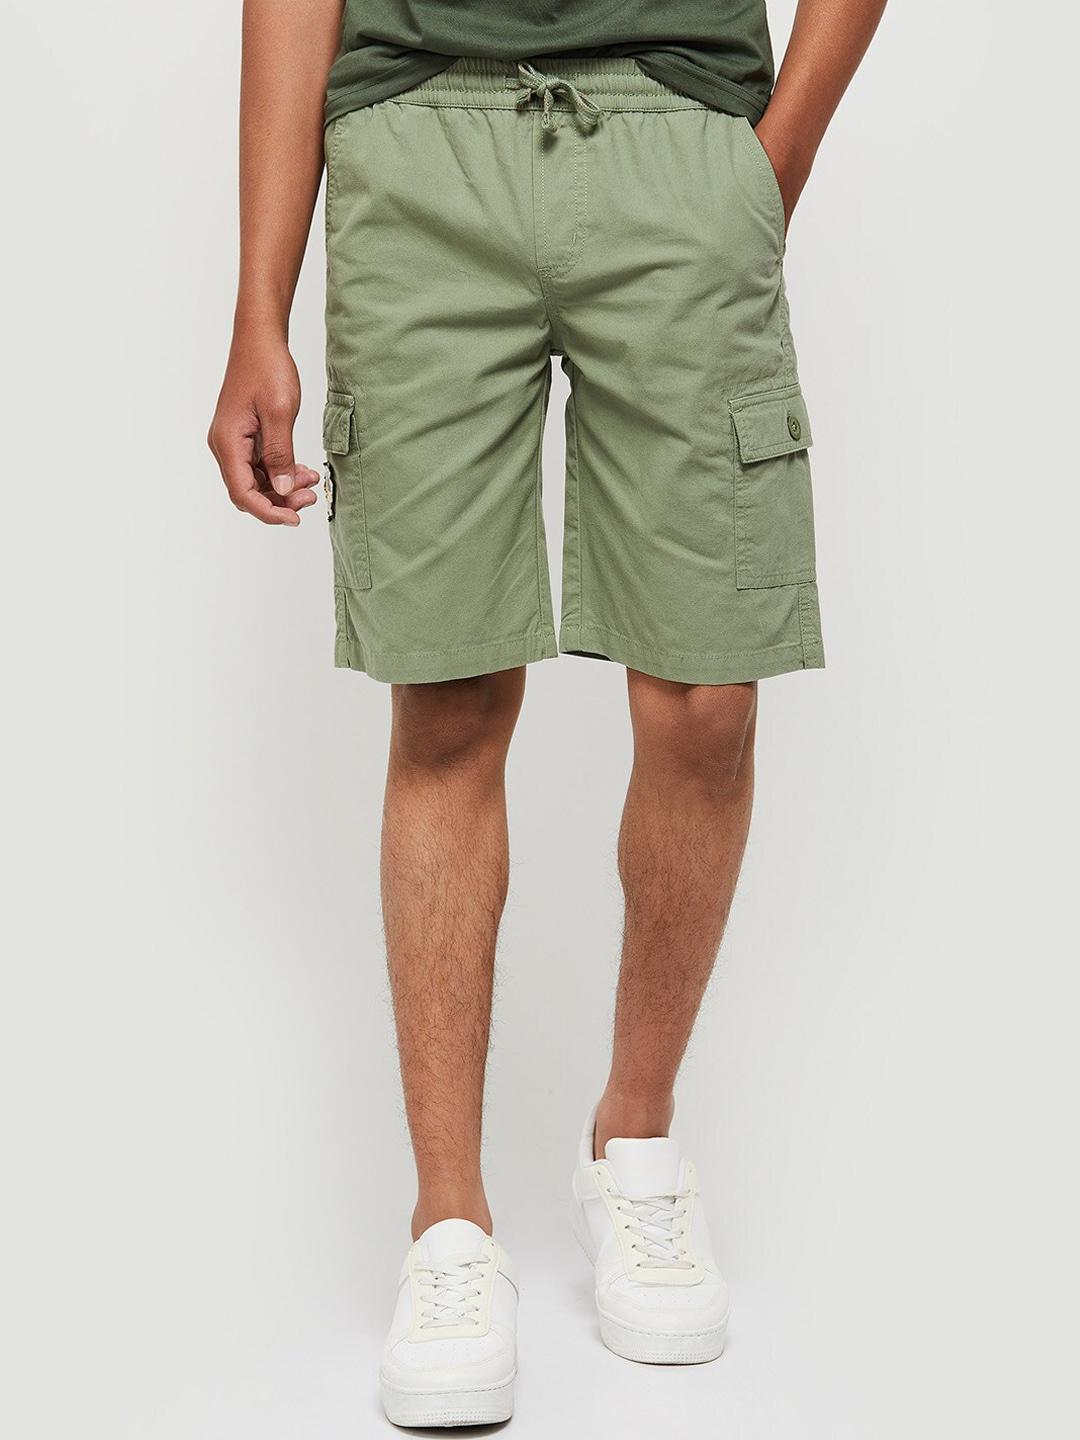 max boys green solid shorts